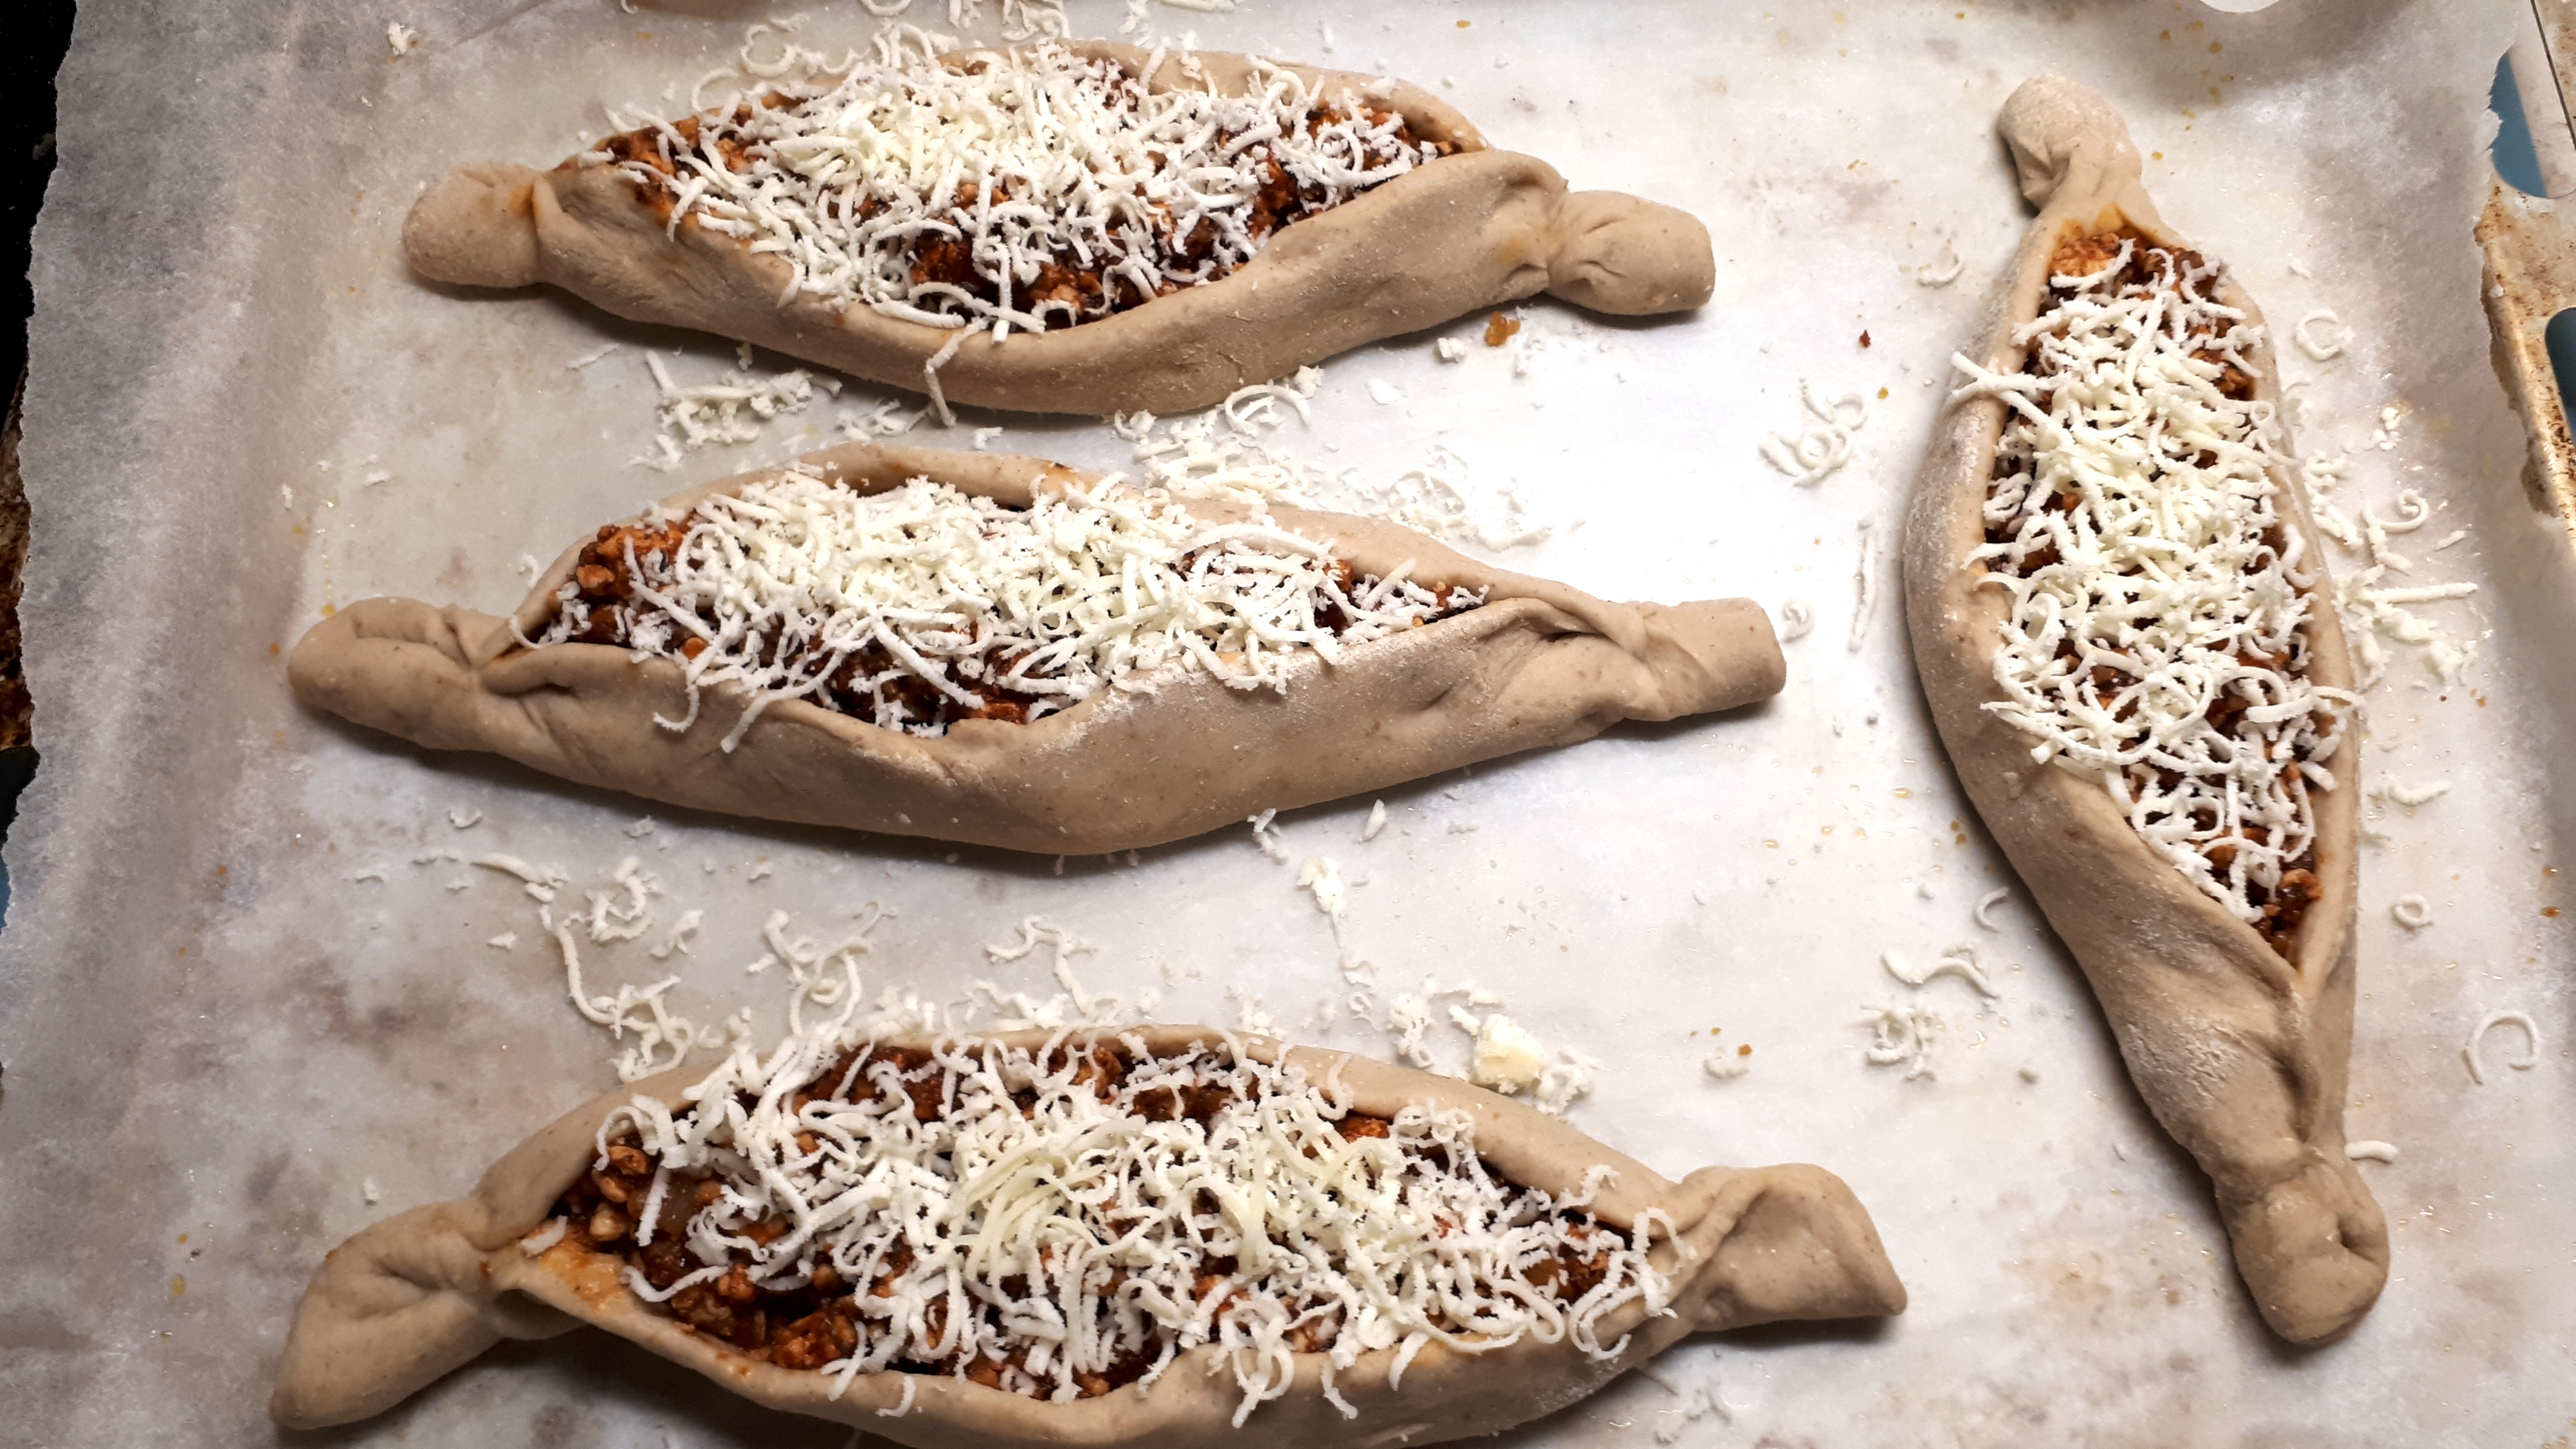 Szénhidrátcsökkentett török pizza készítése Dia Wellness lisztből